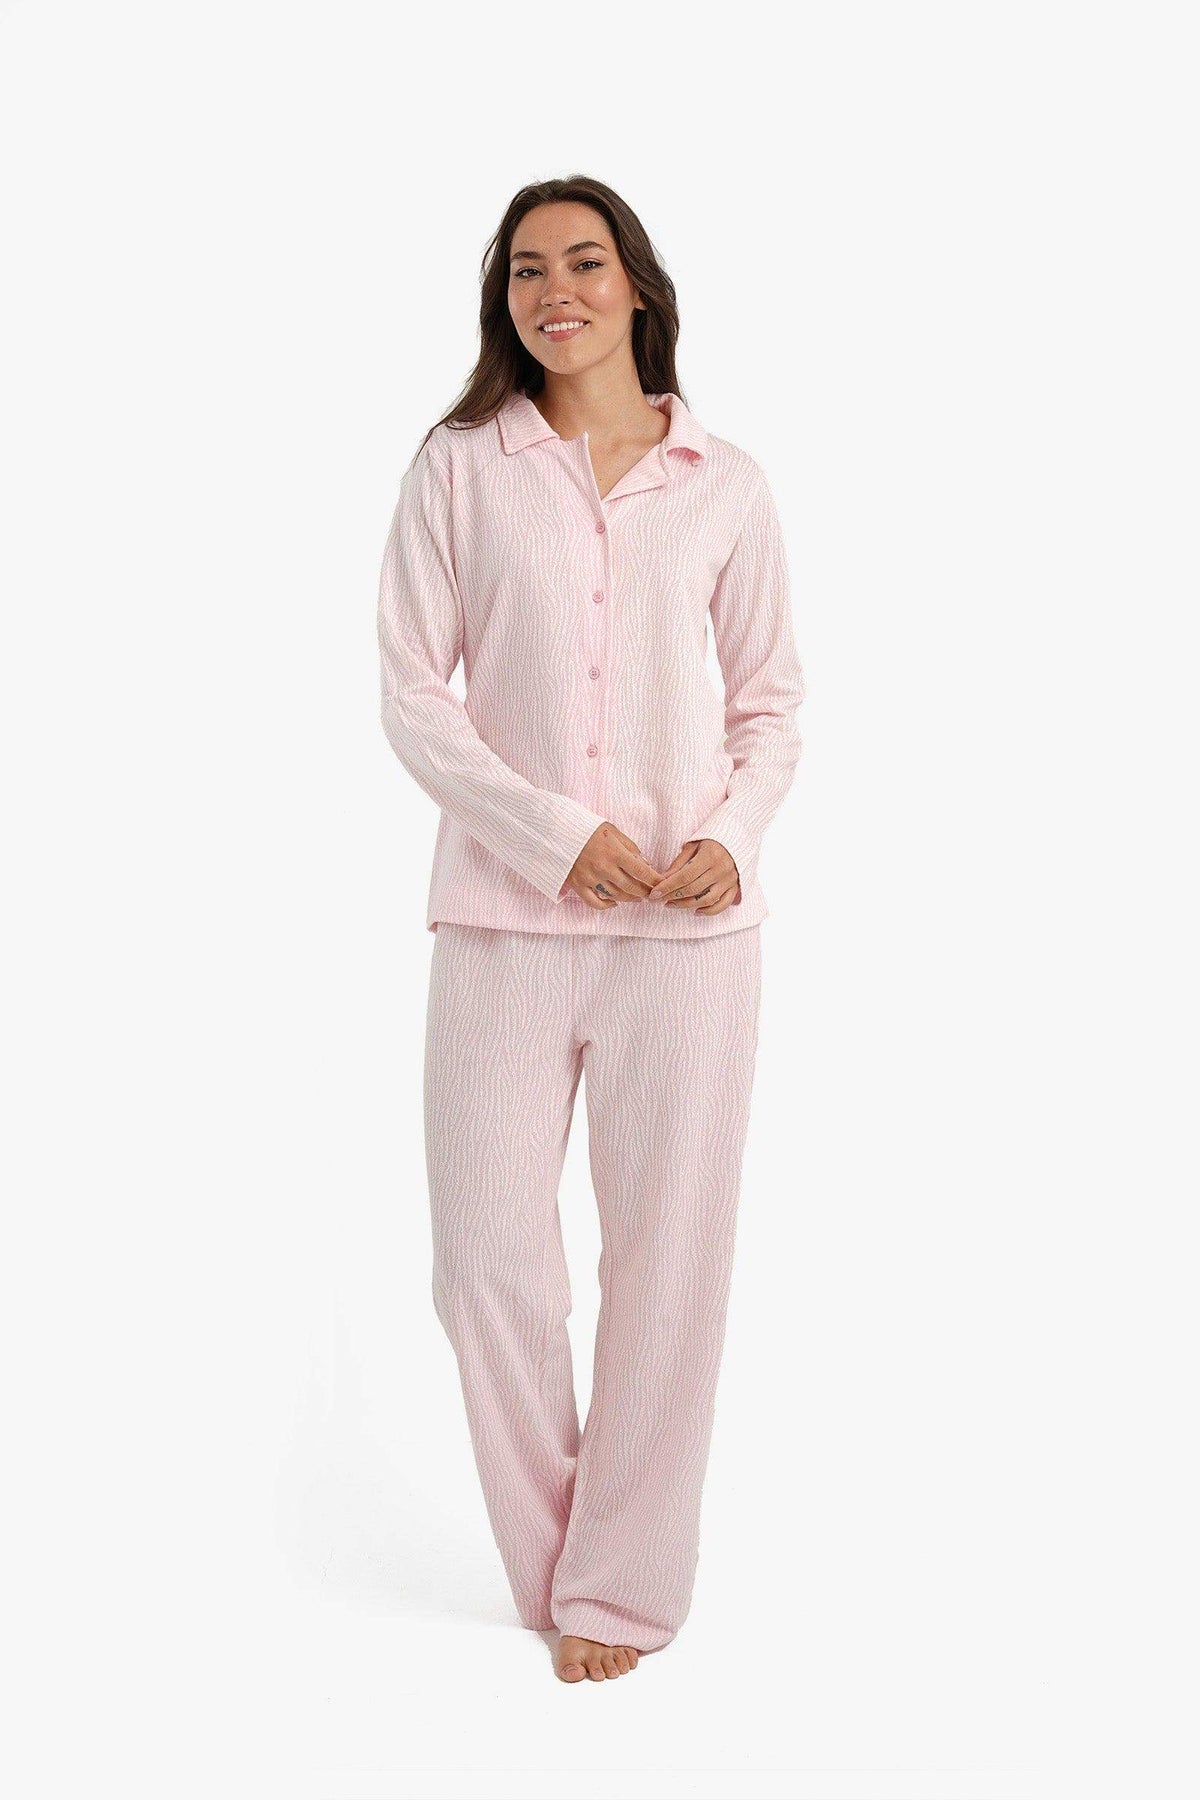 Zebra Print Pyjama Set - Carina - كارينا